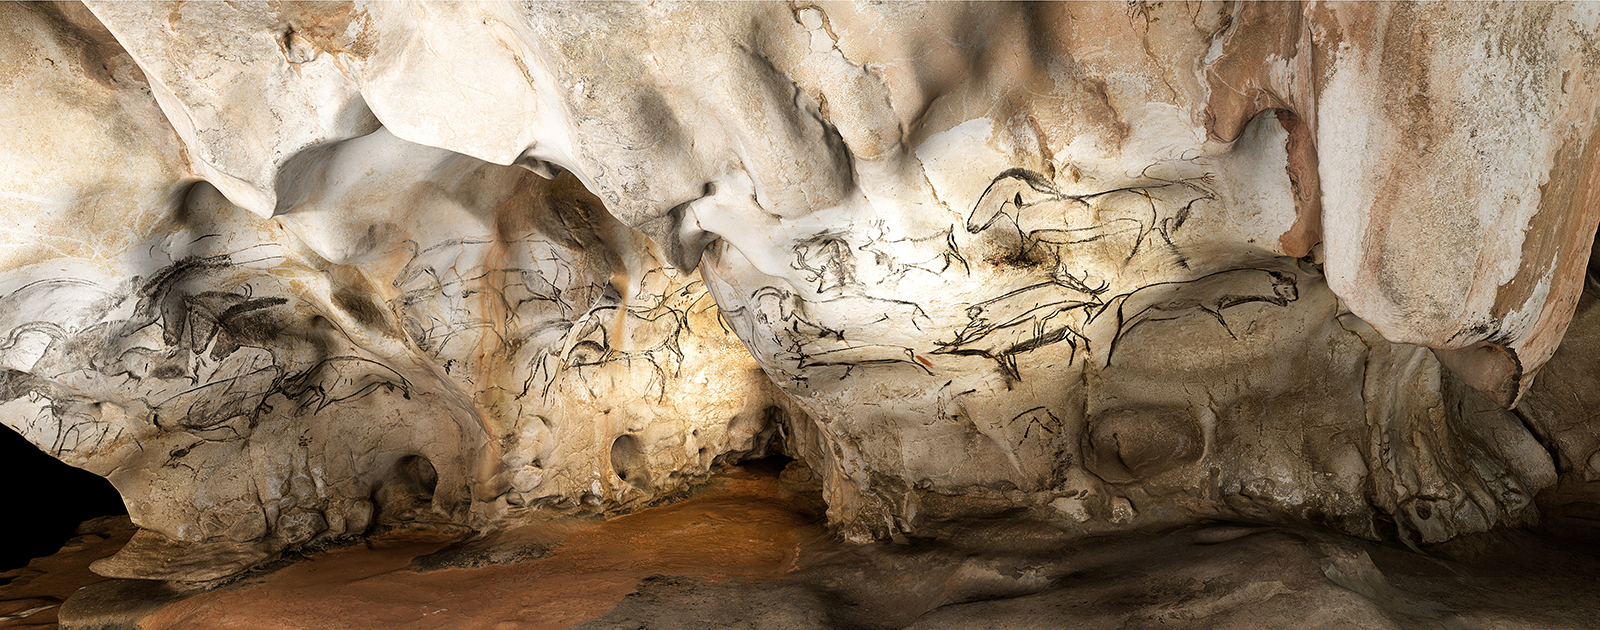 Grotte Chauvet histoire d’une redécouverte